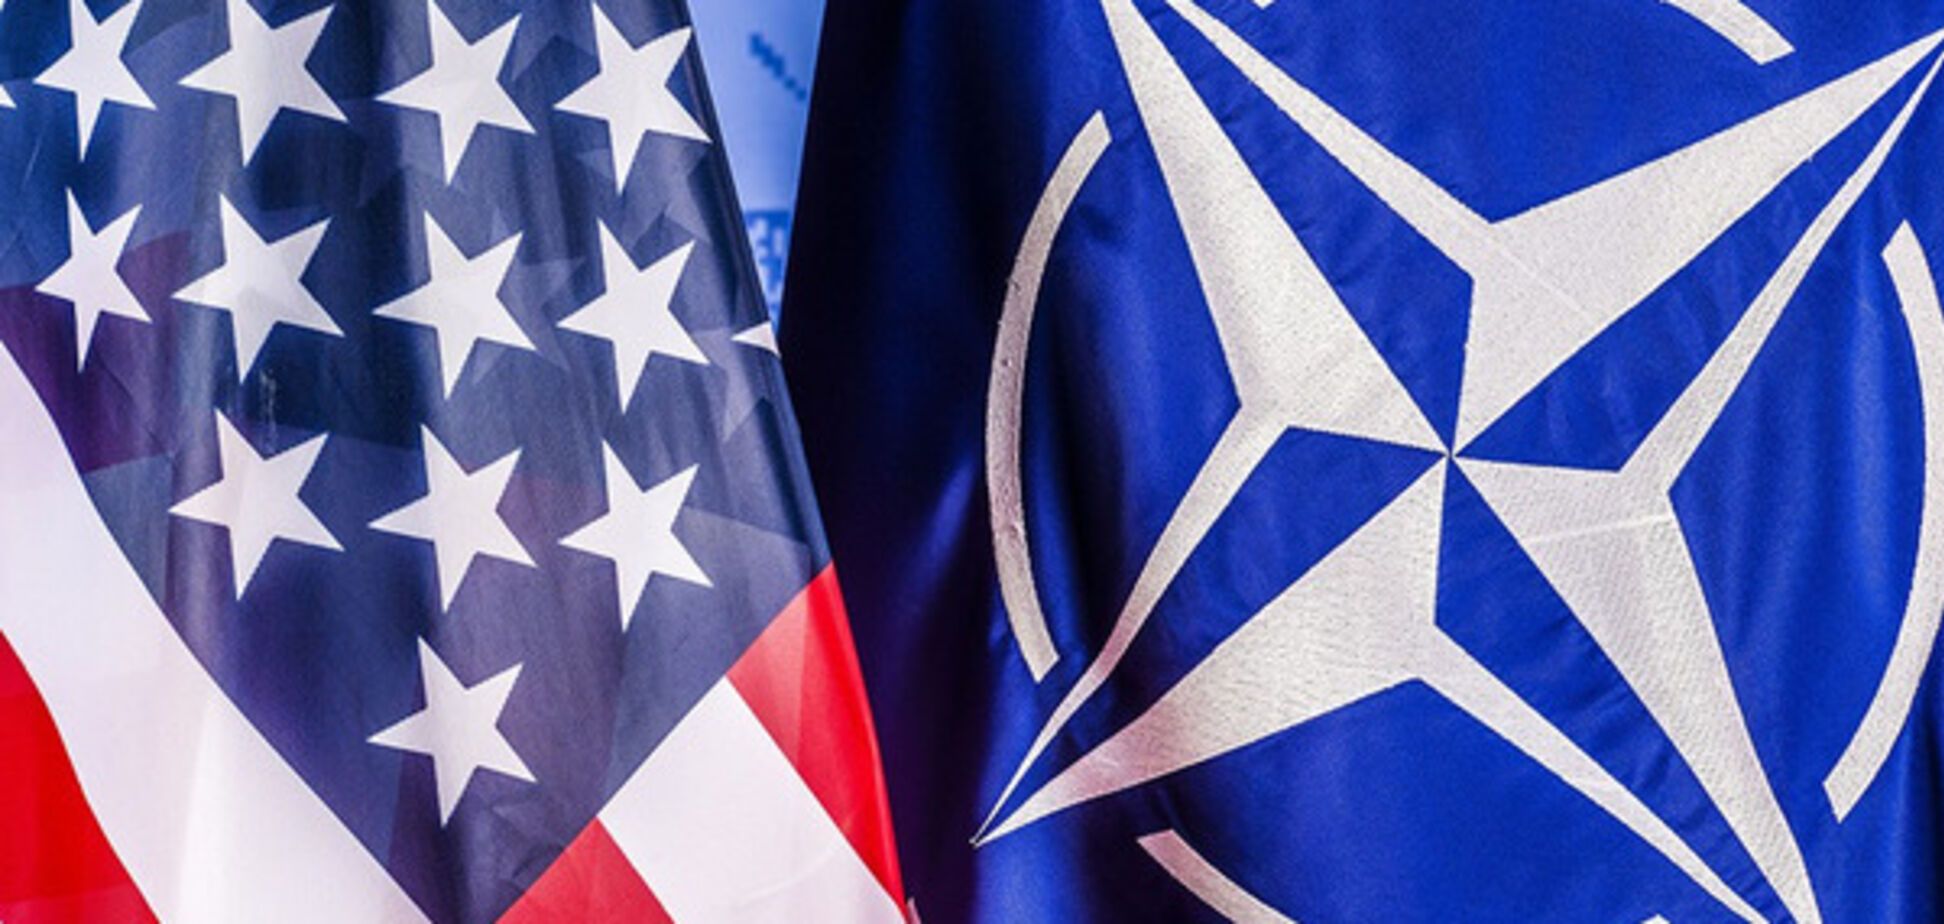 США-НАТО